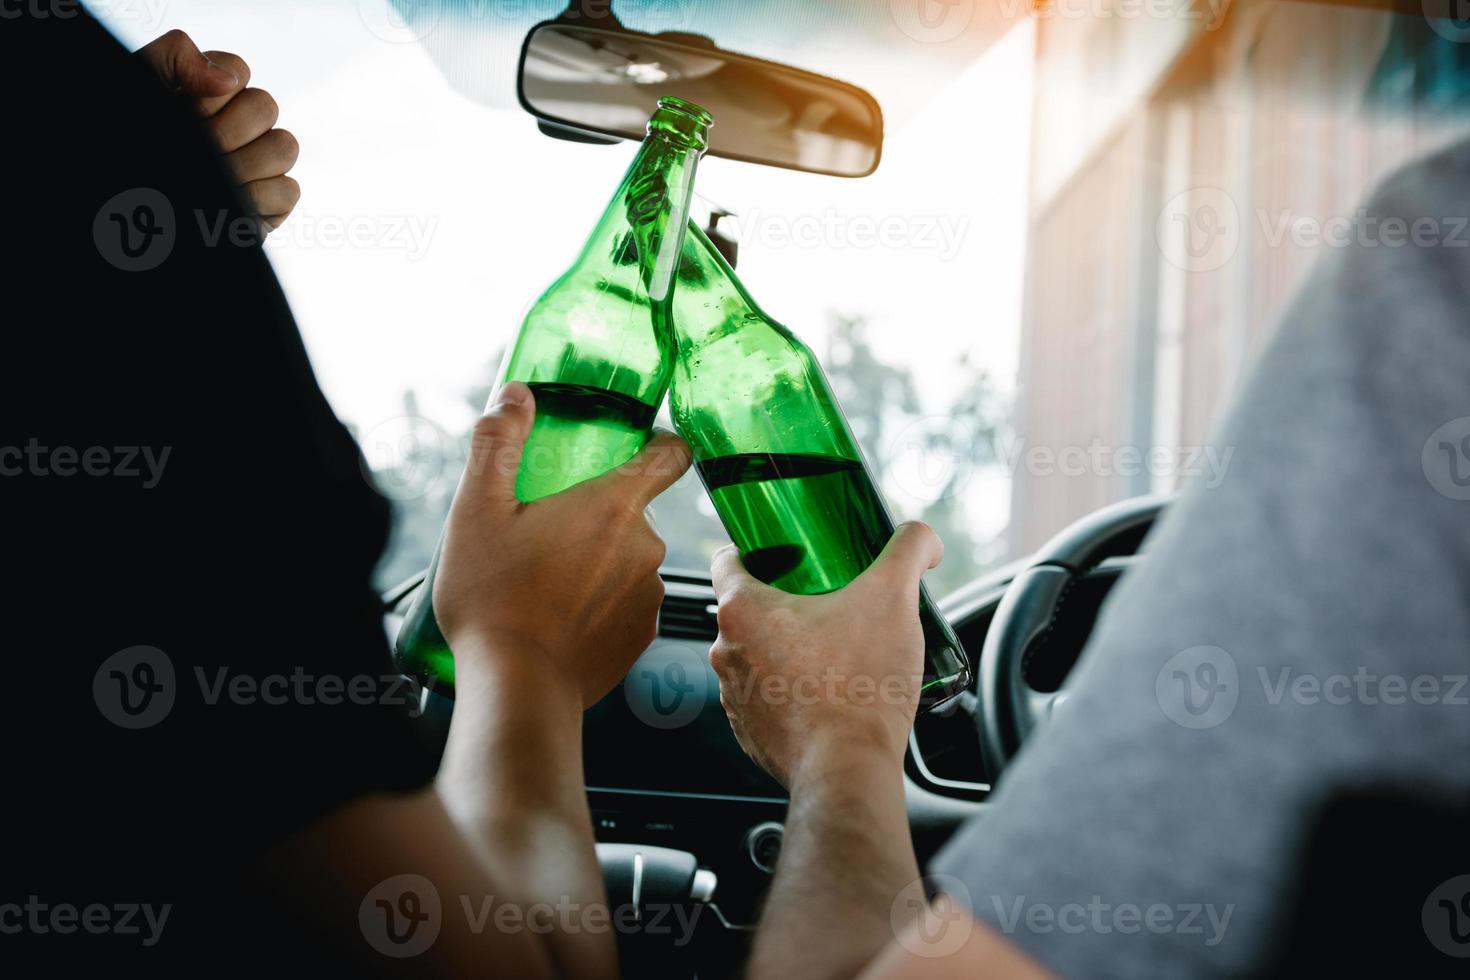 dos amigos varones están celebrando en el auto mientras tocan una botella de cerveza juntos. foto